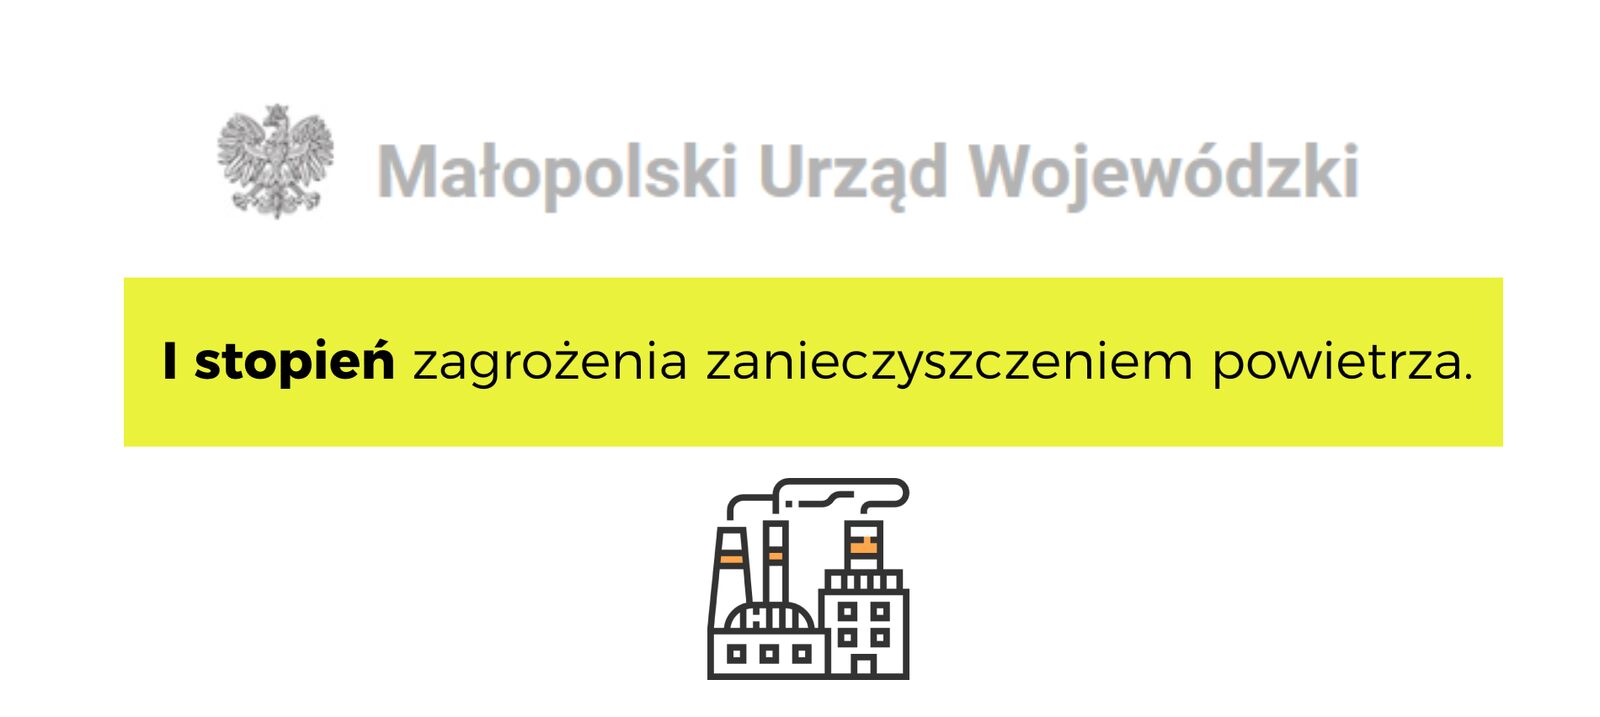 New Project - I stopień zagrożenia zanieczyszczeniem powietrza dla: Krakowa, Małopolski północnej, Małopolski zachodniej i Małopolski południowej